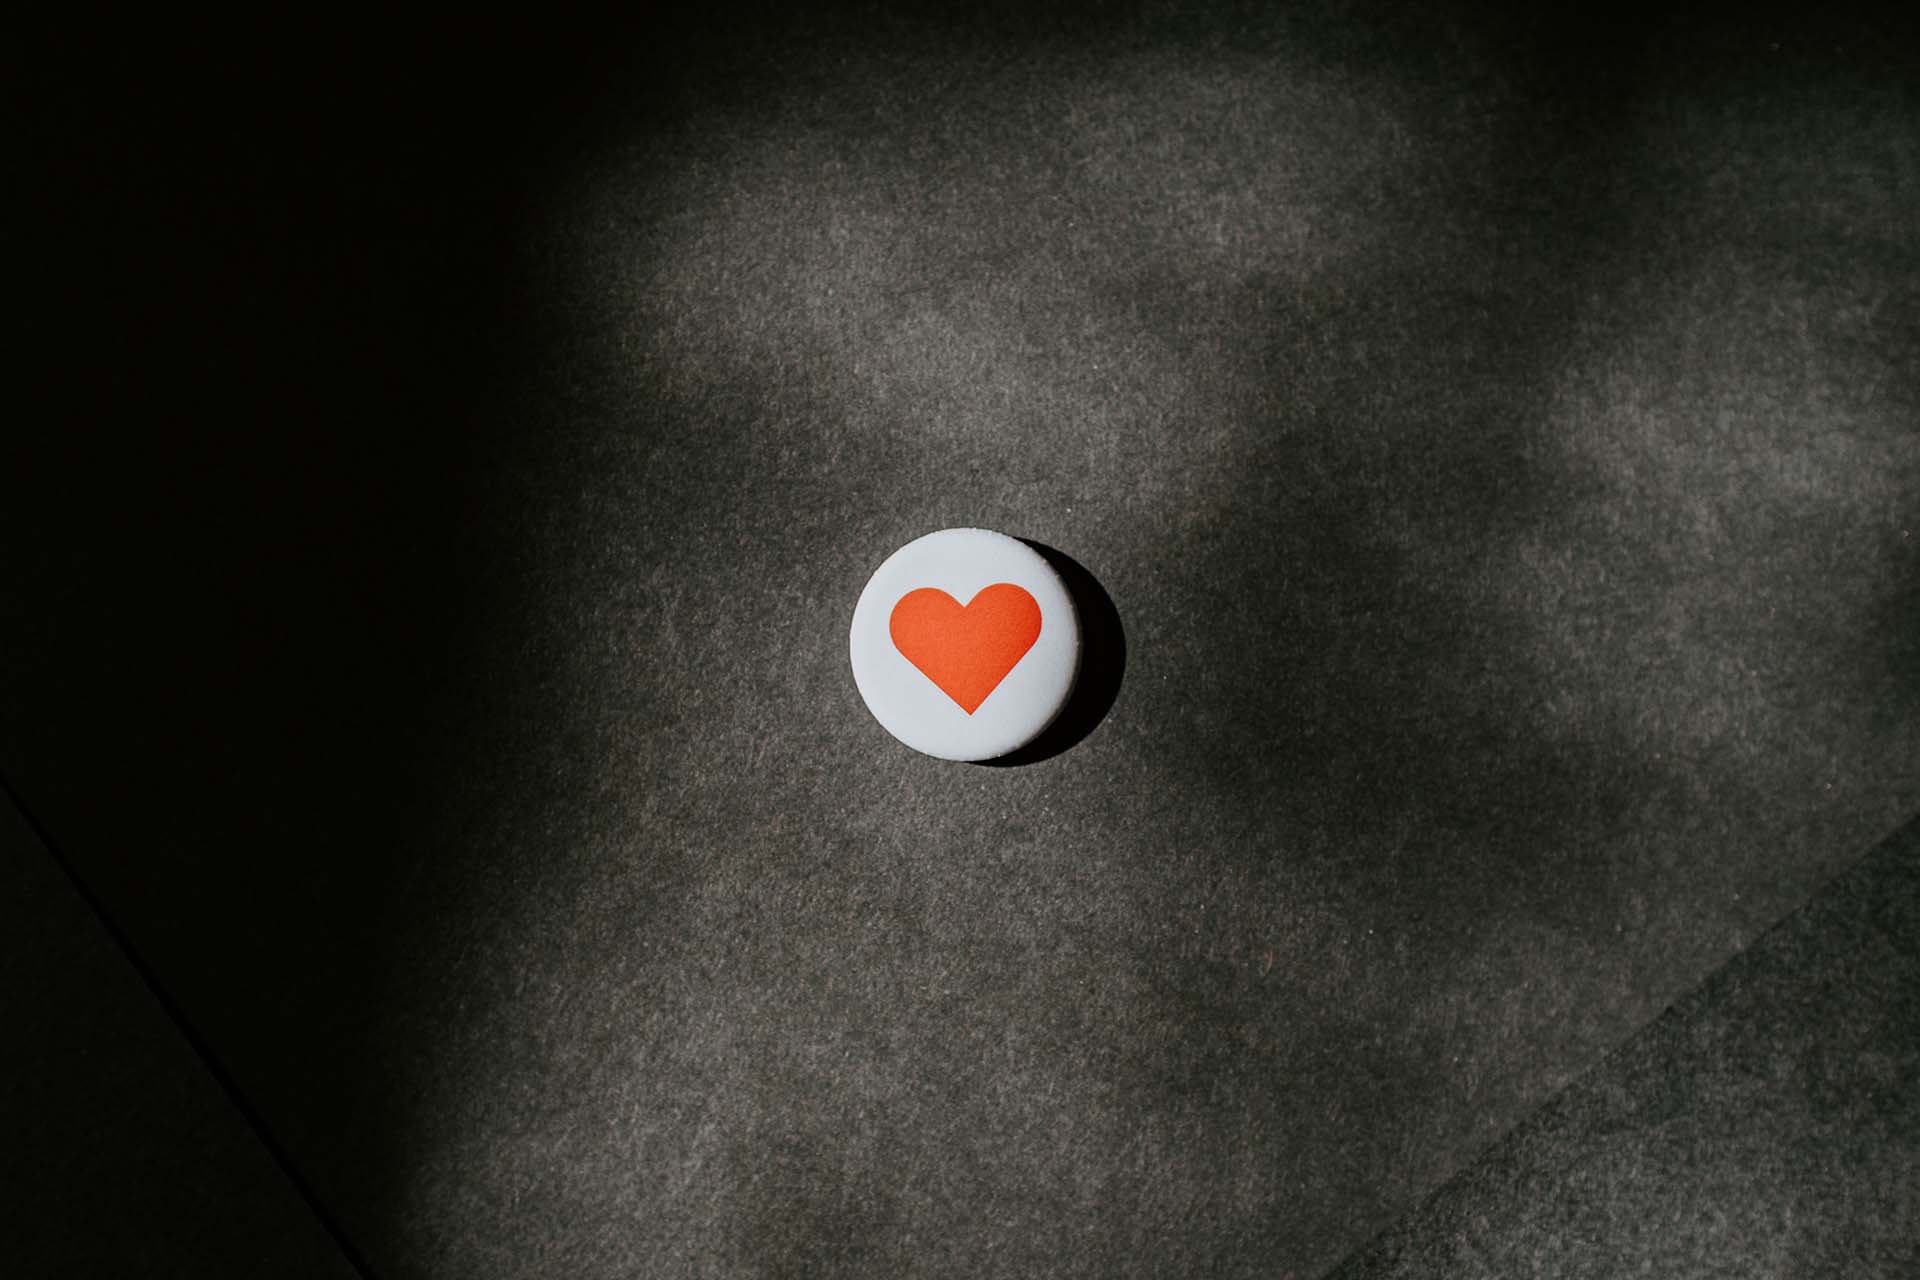 En vit sten med ett handmålat hjärta ligger mot en mörk bakgrund.